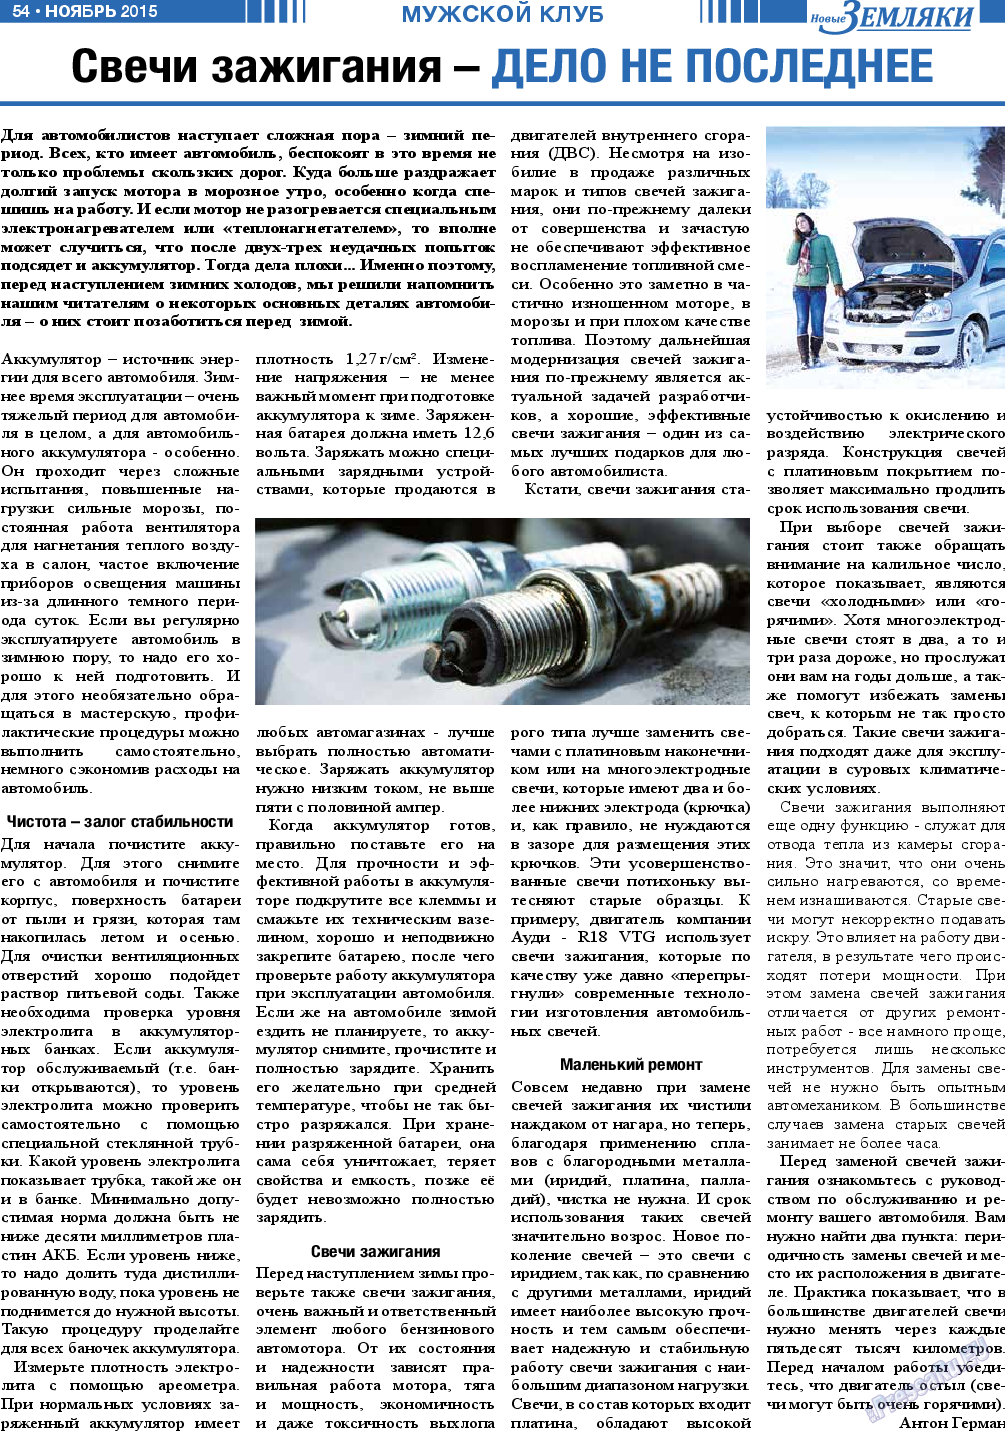 Новые Земляки, газета. 2015 №11 стр.54